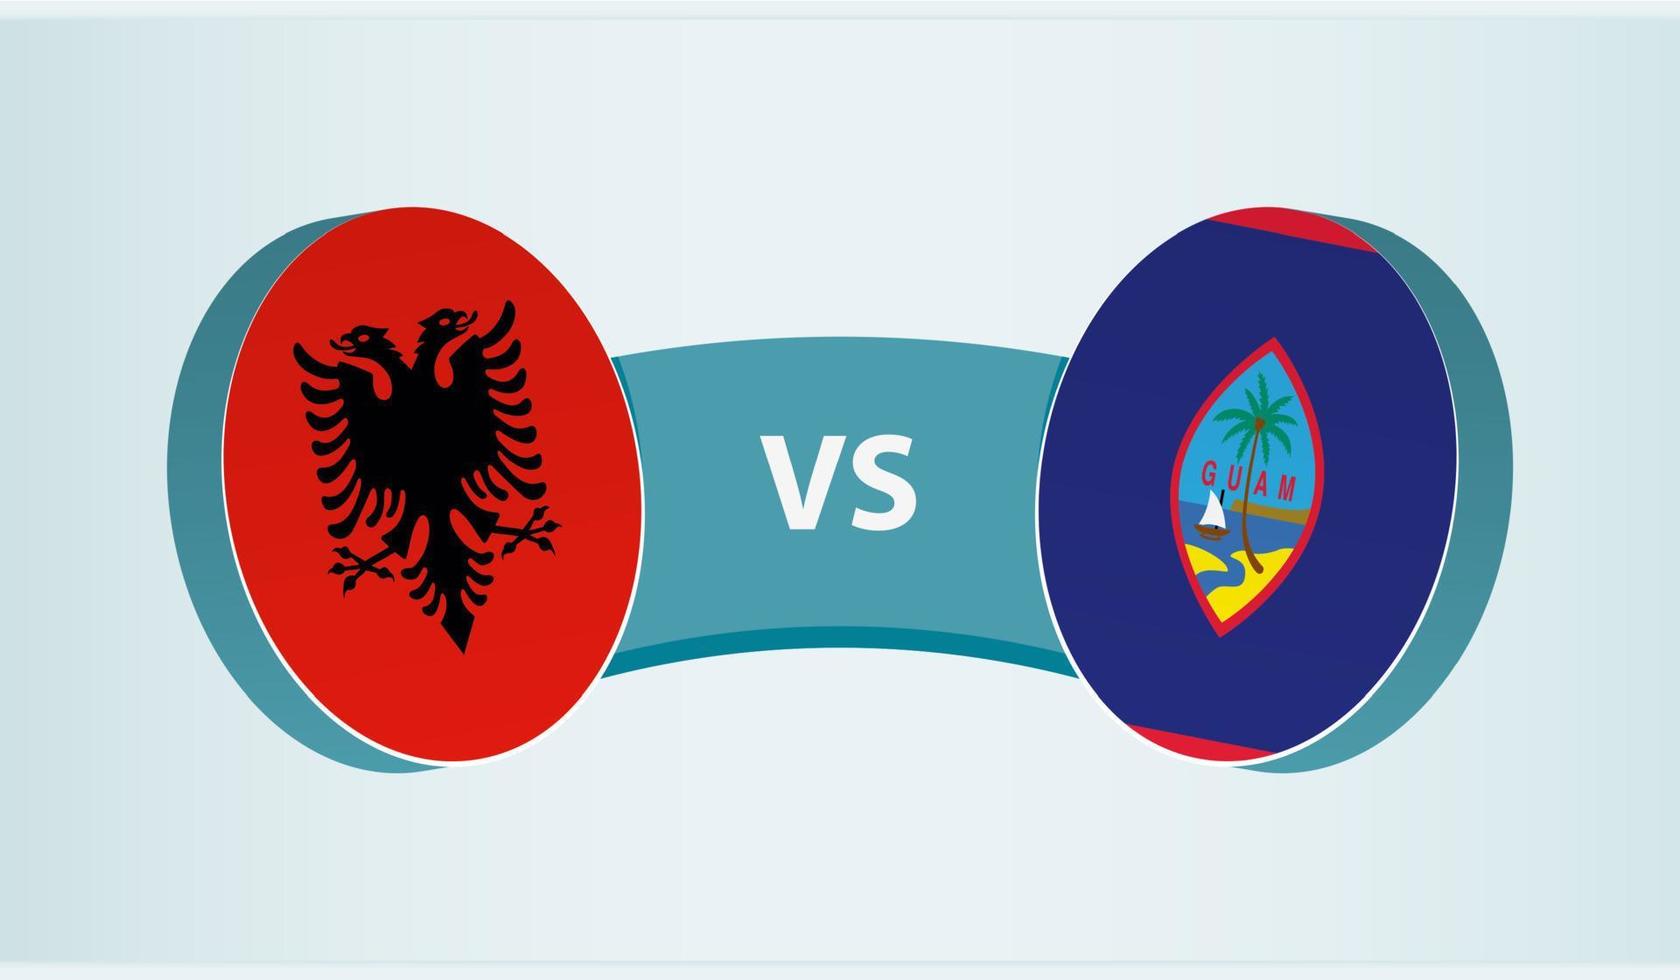 Albania versus Guam, team sports competition concept. vector